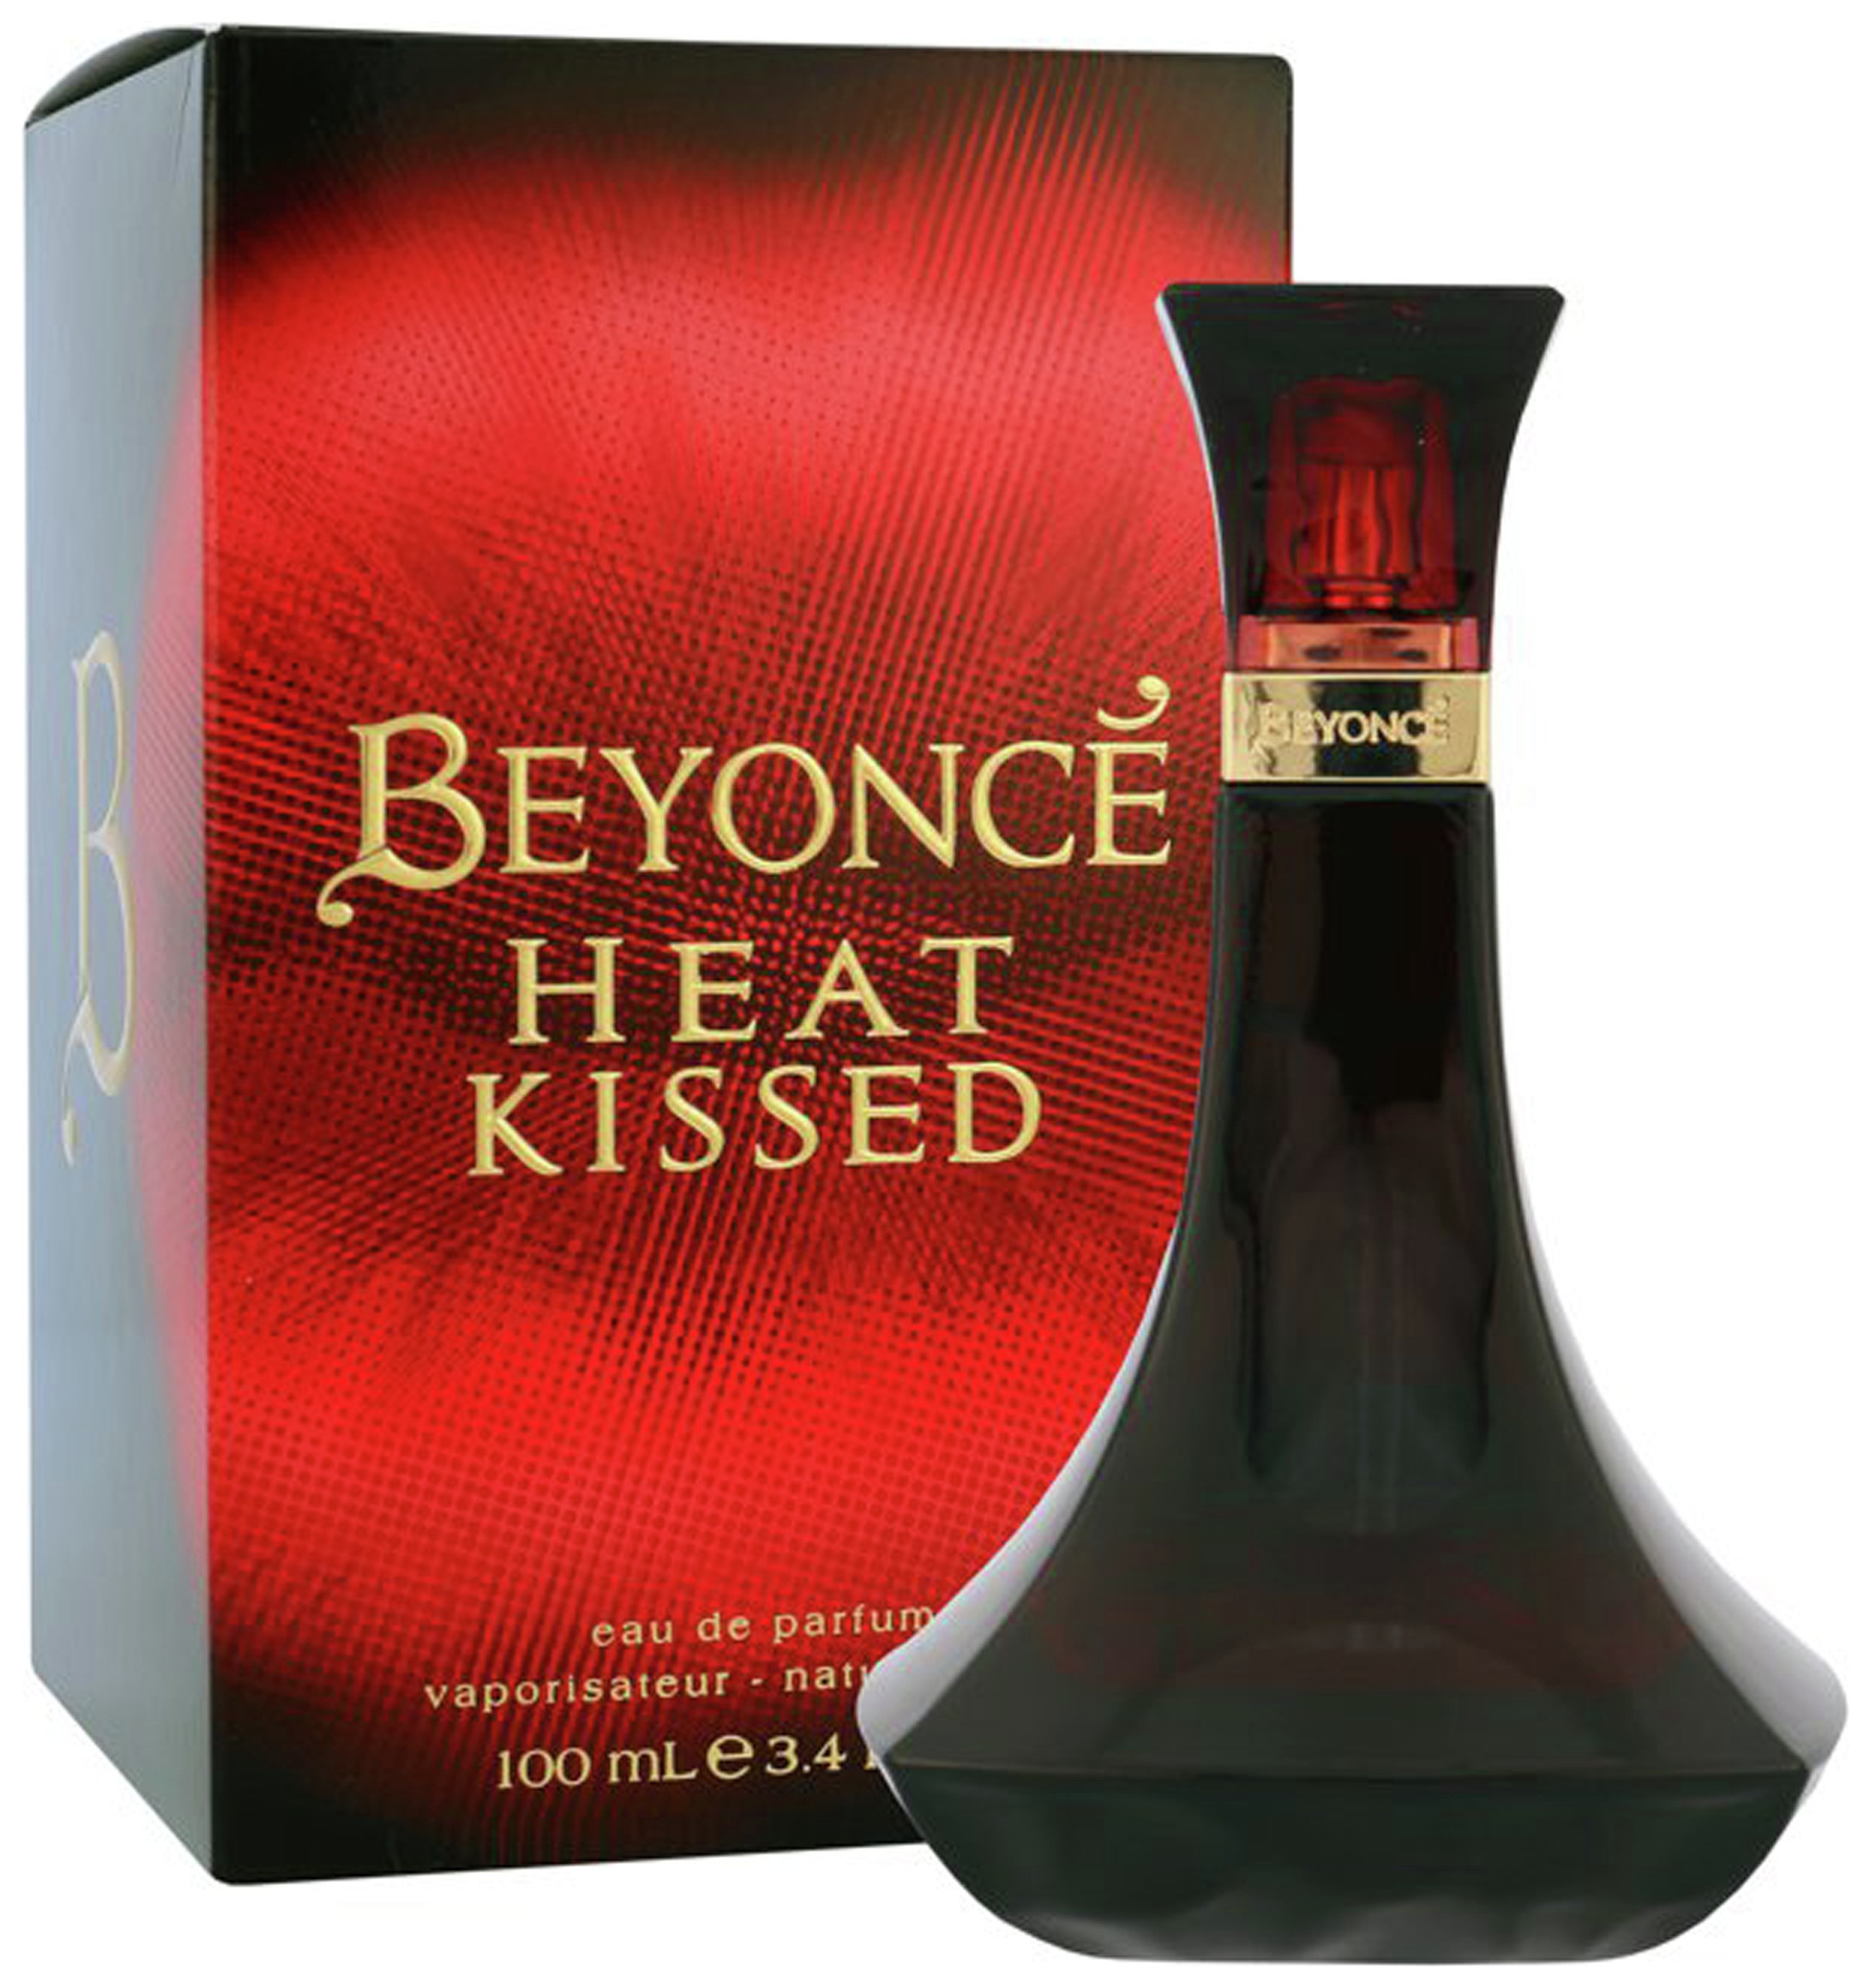 Beyonce Heat Kissed for Women Eau de Parfum - 100ml